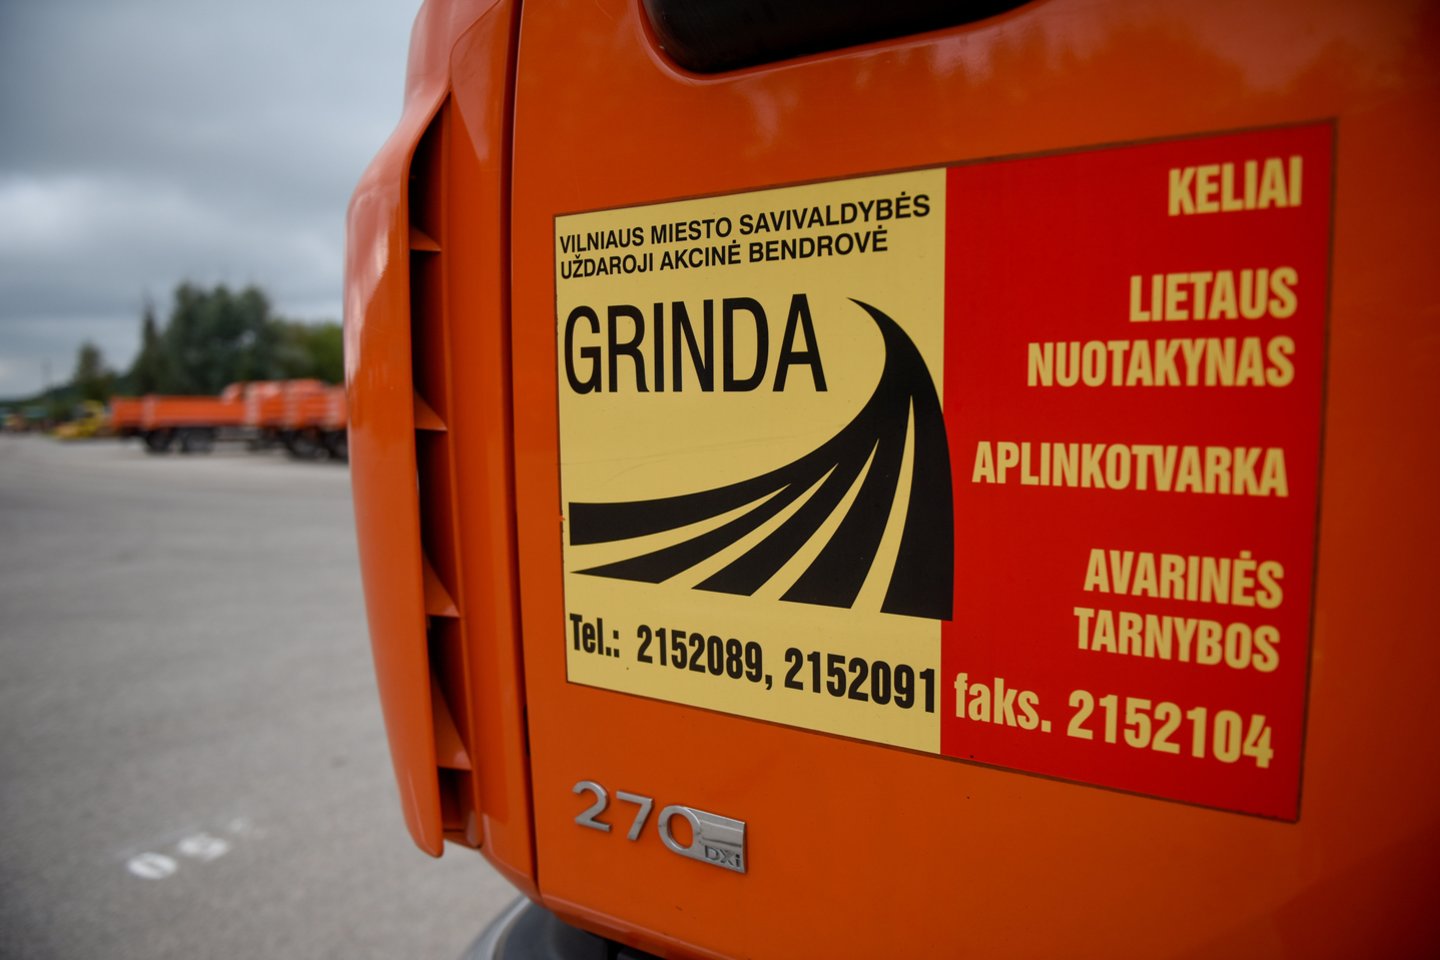 Kelius prižiūrinčios Vilniaus miesto savivaldybės įmonės „Grinda“ atstovai teigė, kad gyvename tokio klimato šalyje, kuri išmoko malkas žiemai ruošti vasarą.<br>D.Umbraso nuotr.